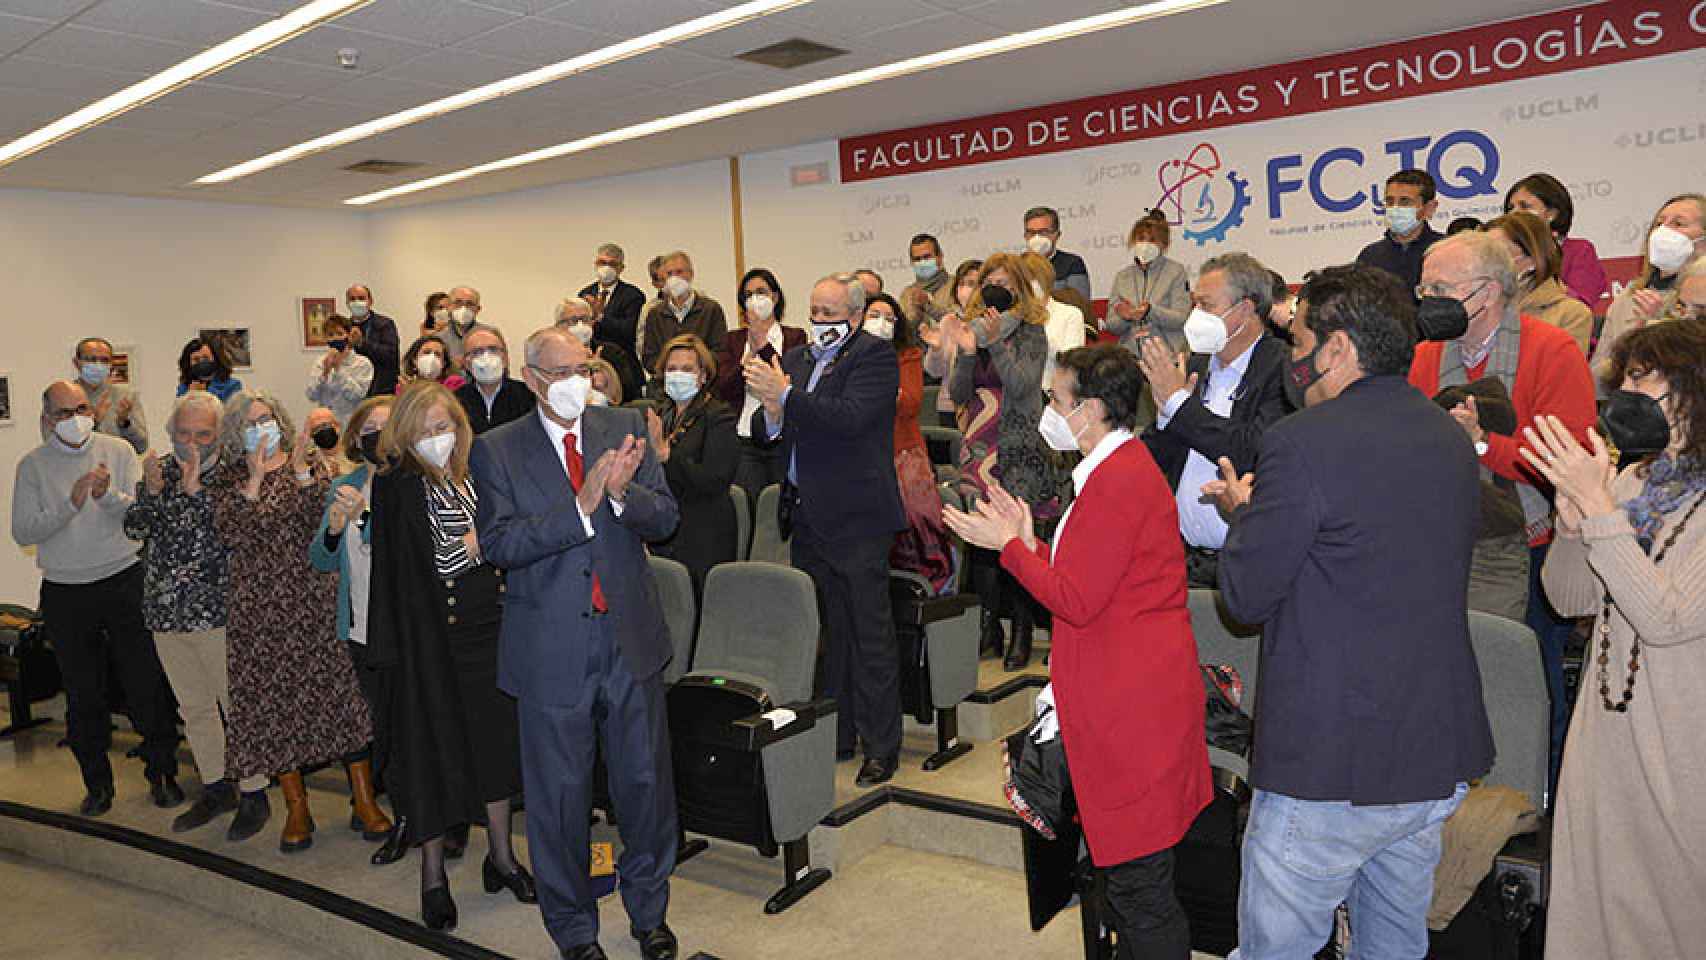 La Facultad de Ciencias y Tecnologías Químicas de la UCLM reconoce a su primer catedrático, Ernesto Martínez Ataz.